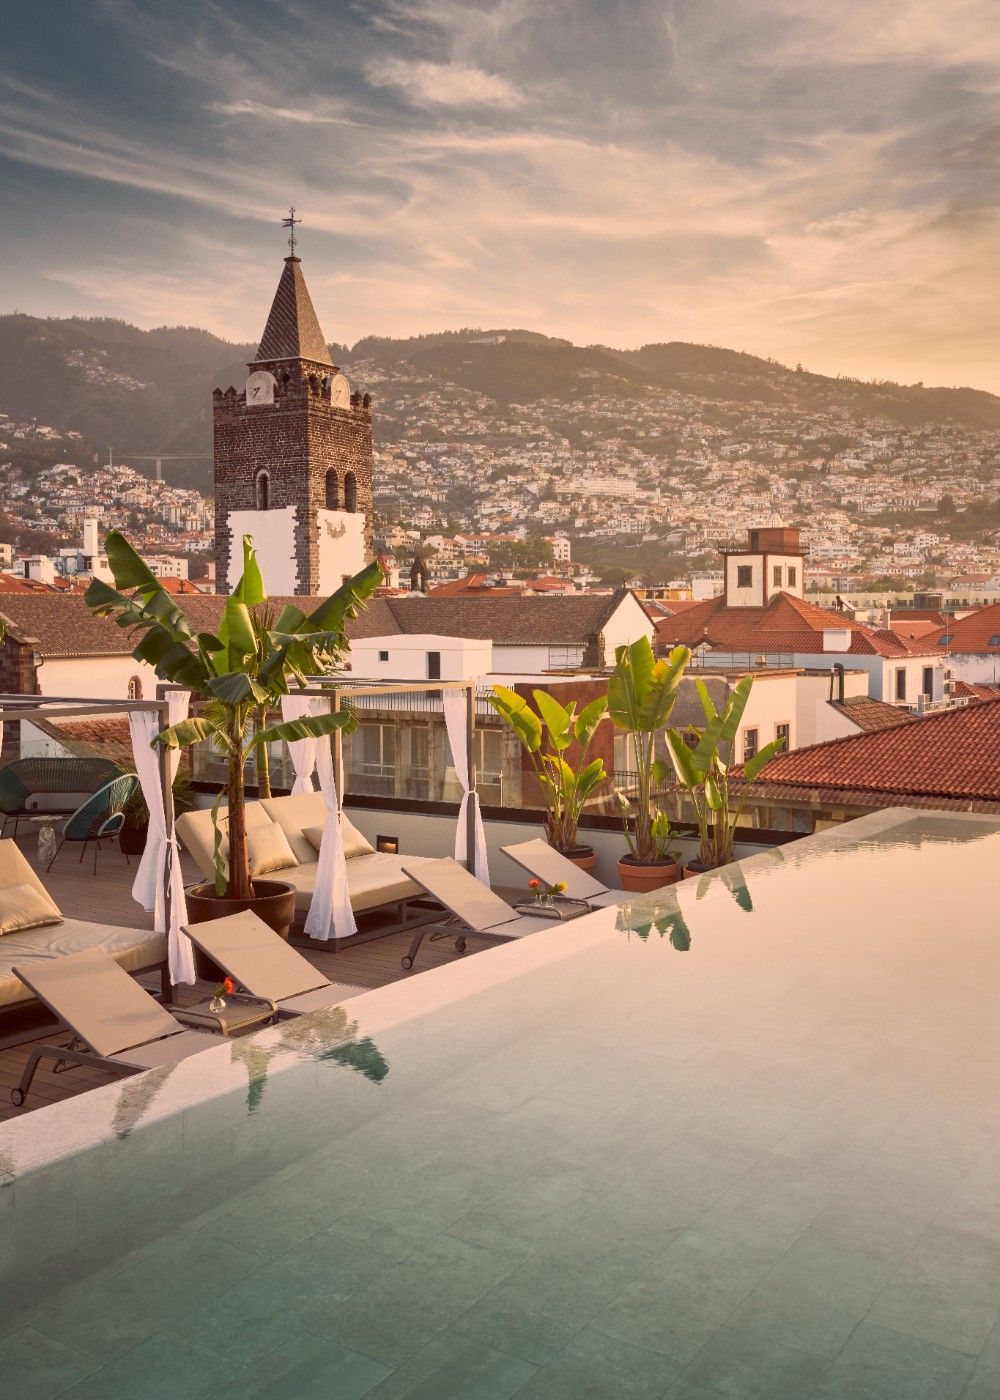 Barceló Funchal Oldtown, valor del patrimonio cultural de Madeira